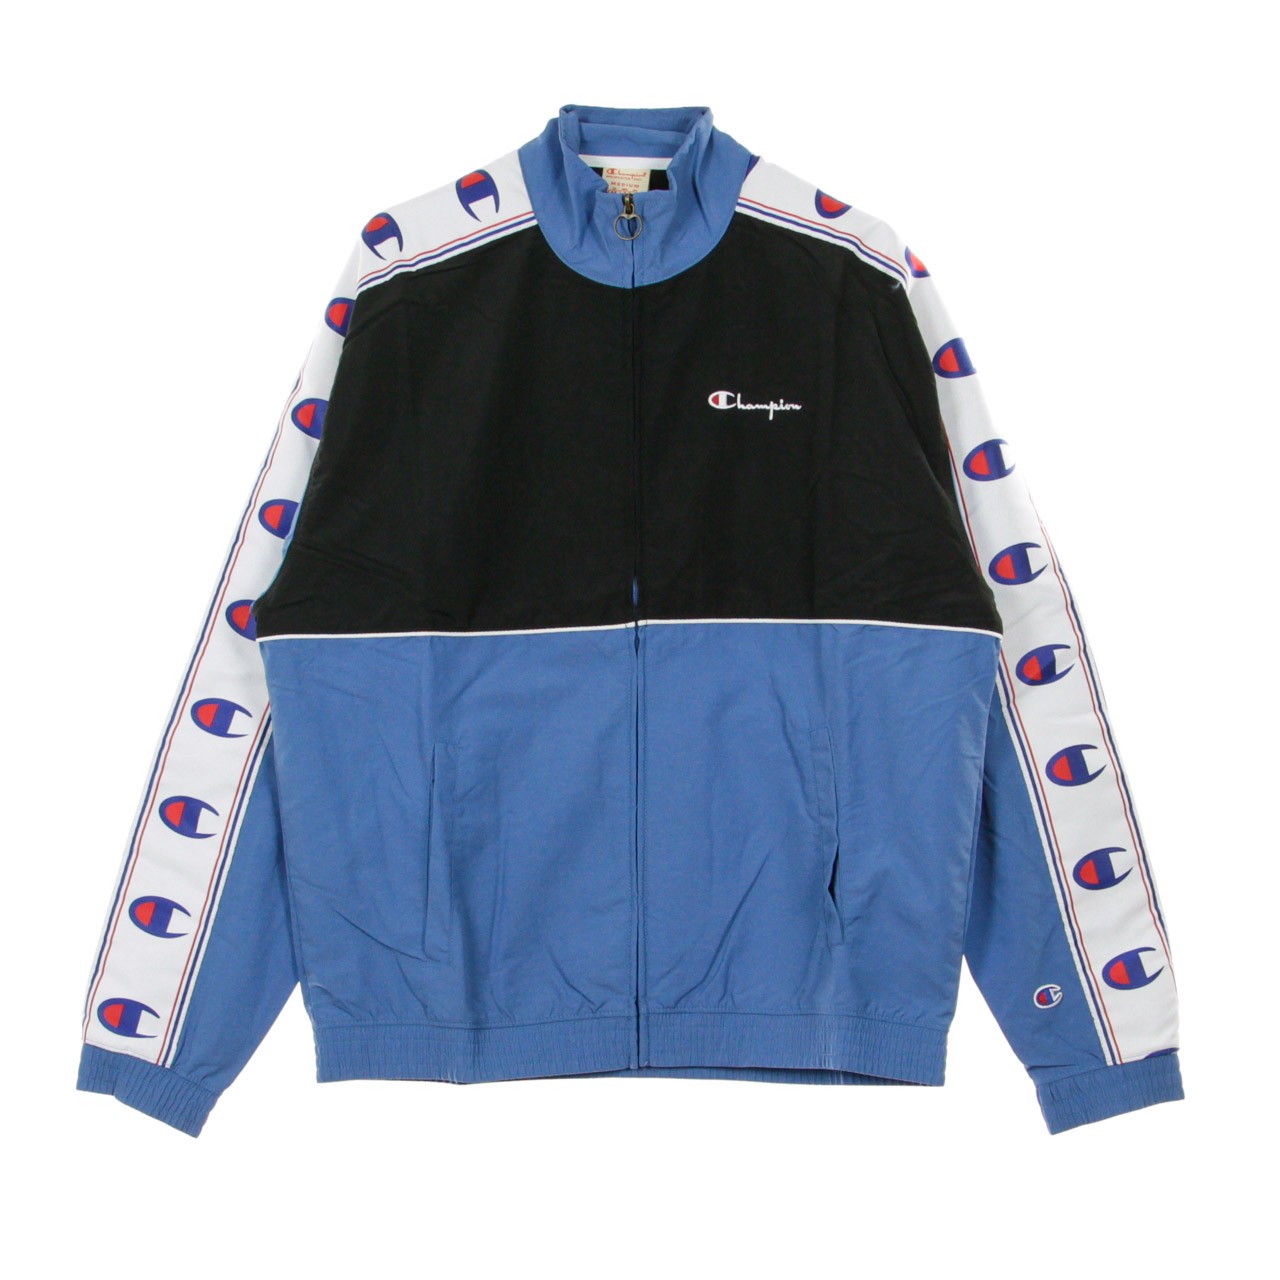 Men's Tracksuit Jacket Full Zip Top Light Blue/black/white